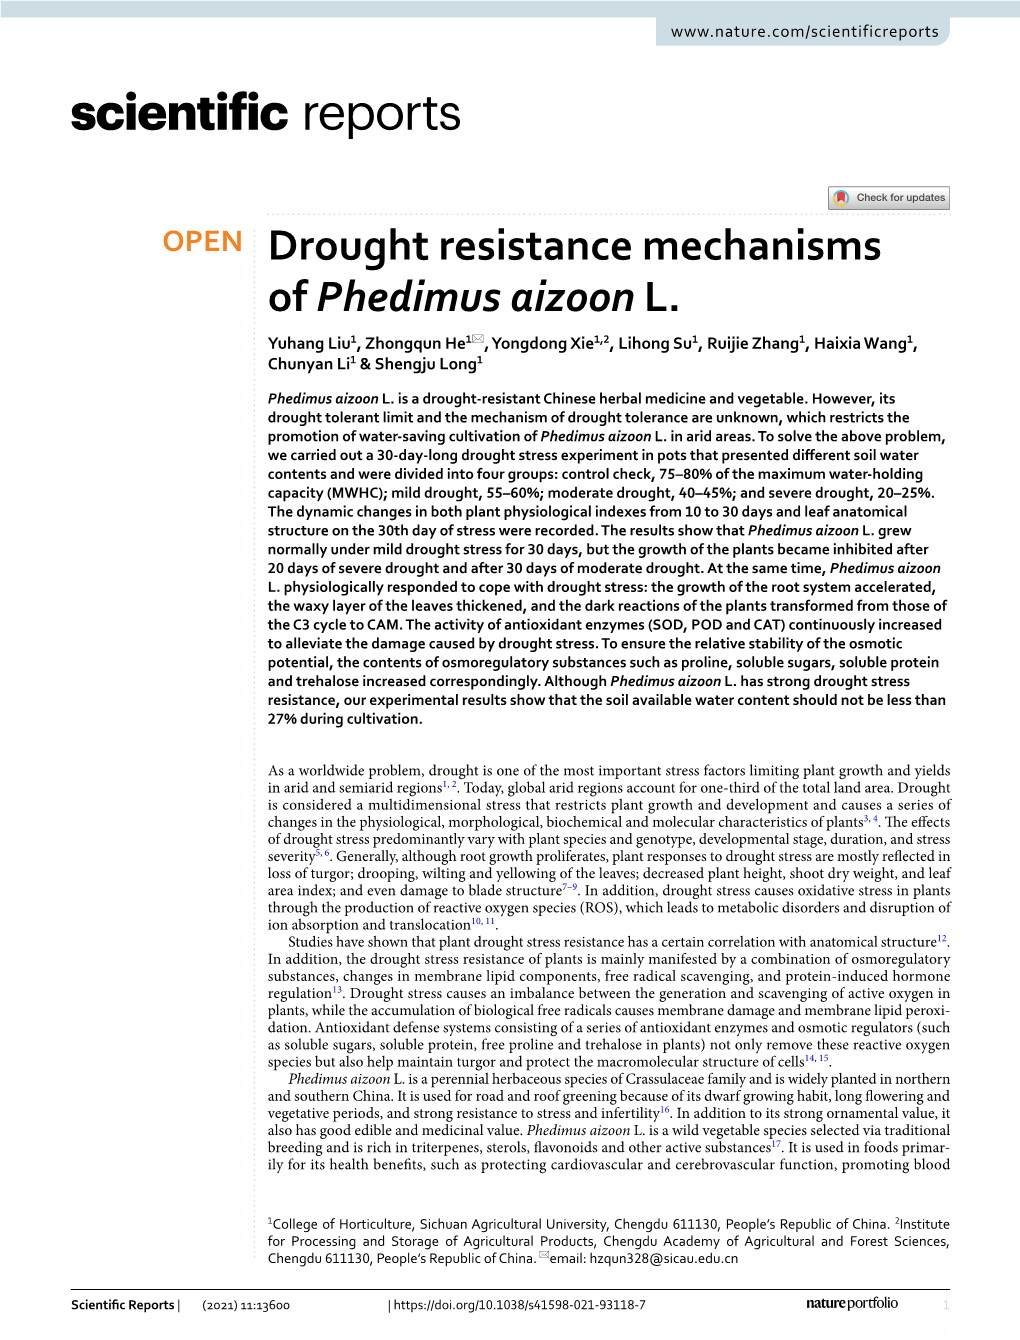 Drought Resistance Mechanisms of Phedimus Aizoon L. Yuhang Liu1, Zhongqun He1*, Yongdong Xie1,2, Lihong Su1, Ruijie Zhang1, Haixia Wang1, Chunyan Li1 & Shengju Long1